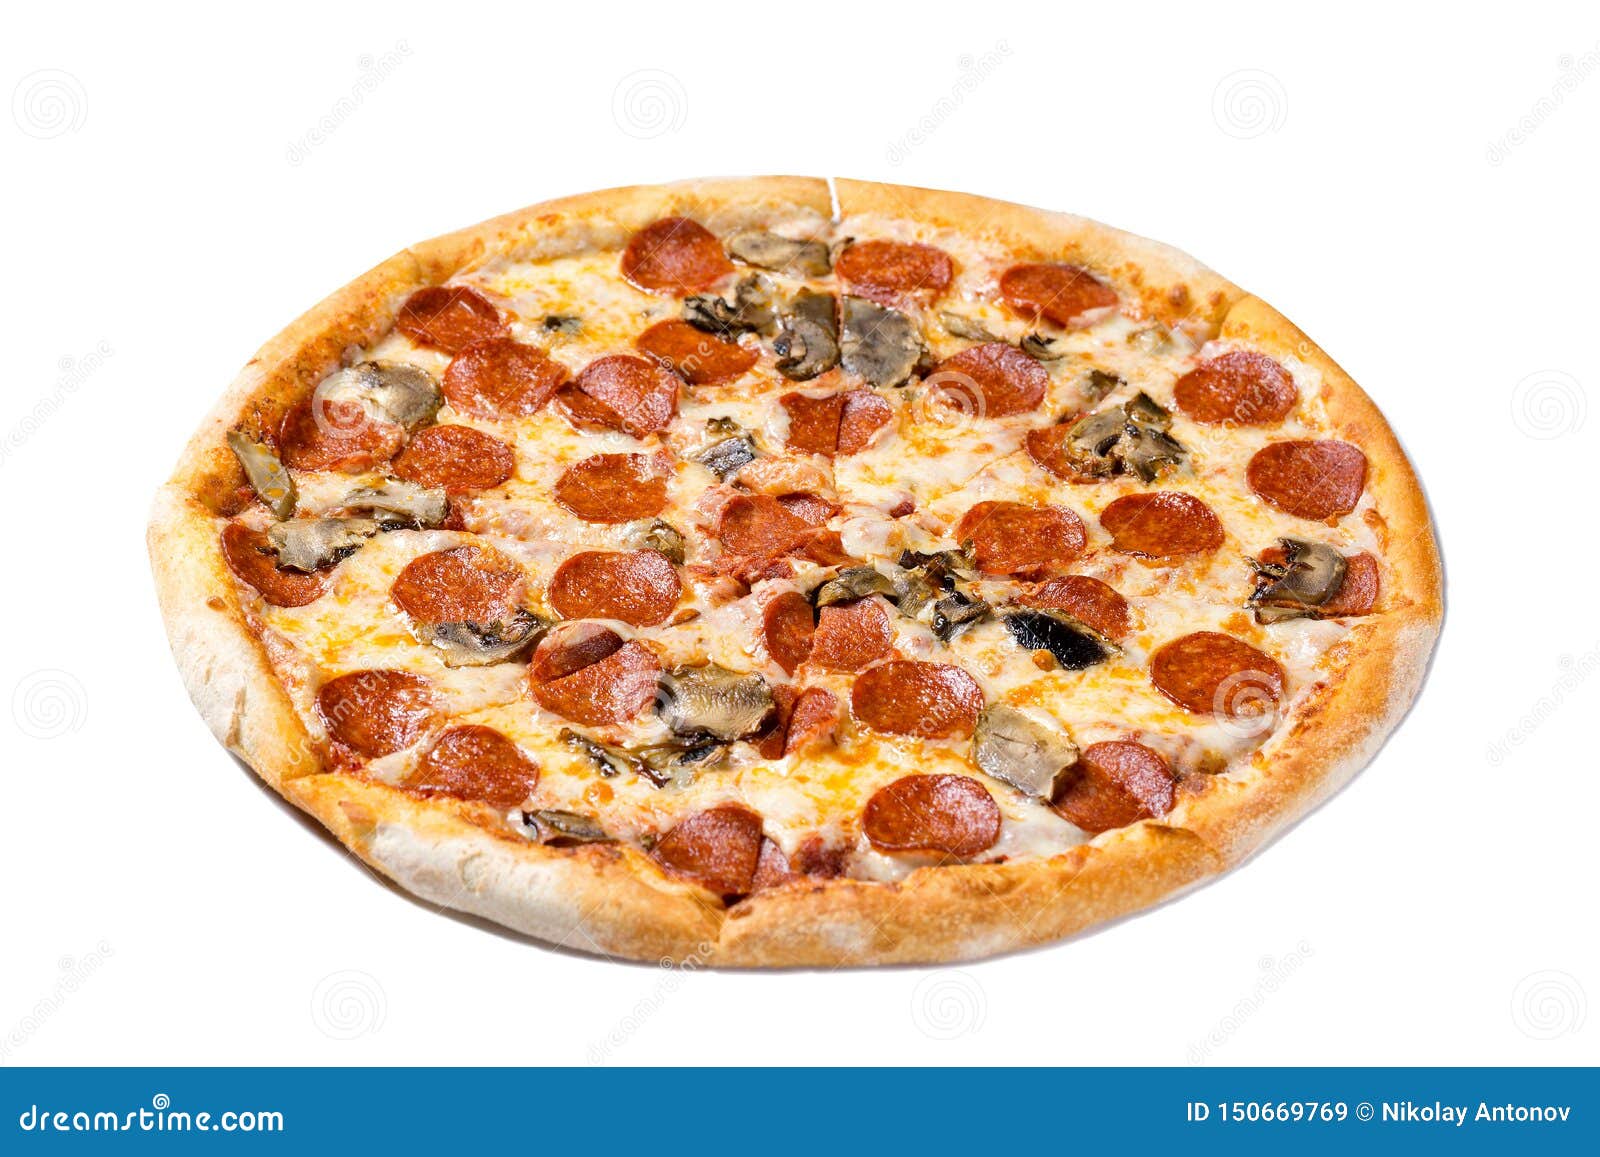 чем пицца пепперони отличается от пепперони фреш фото 14